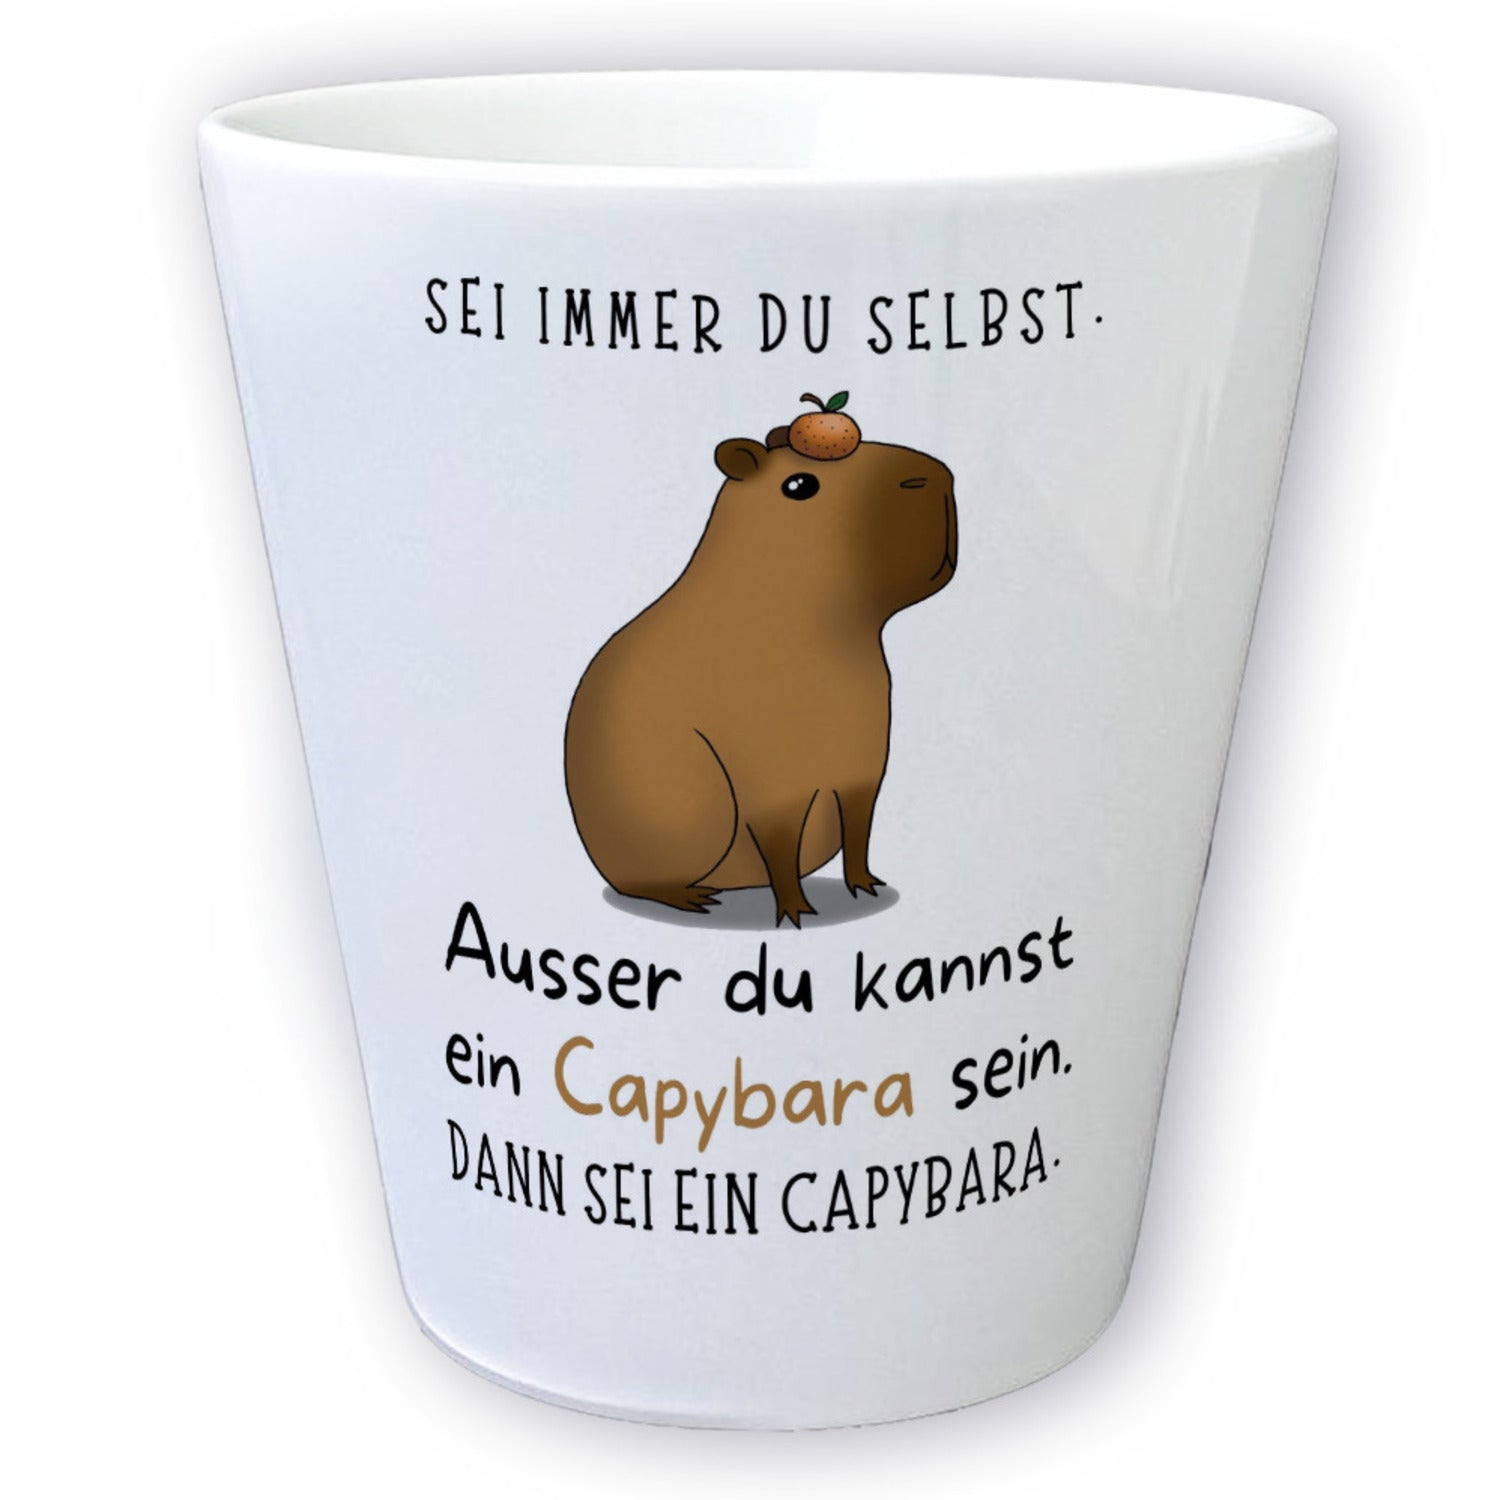 Sei immer du selbst - Capybara Blumentopf  Jetzt kaufen und klicken! –